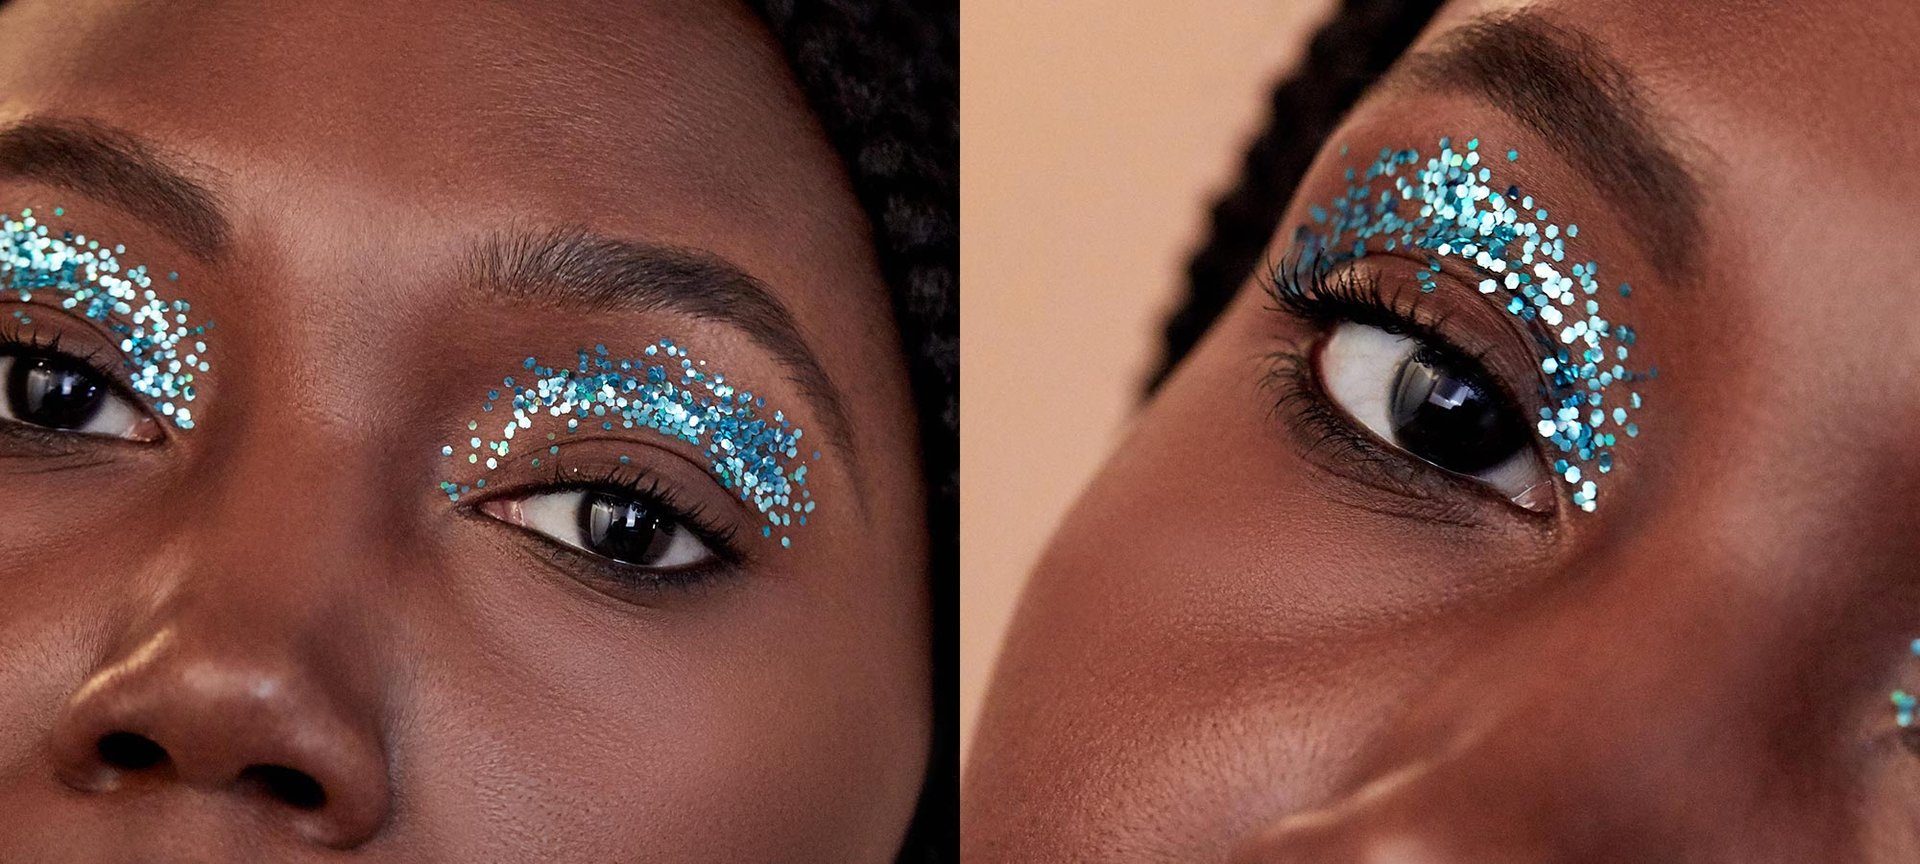 Opsætning Præferencebehandling historie The Best Glitter Eye Makeup Ideas - L'Oréal Paris